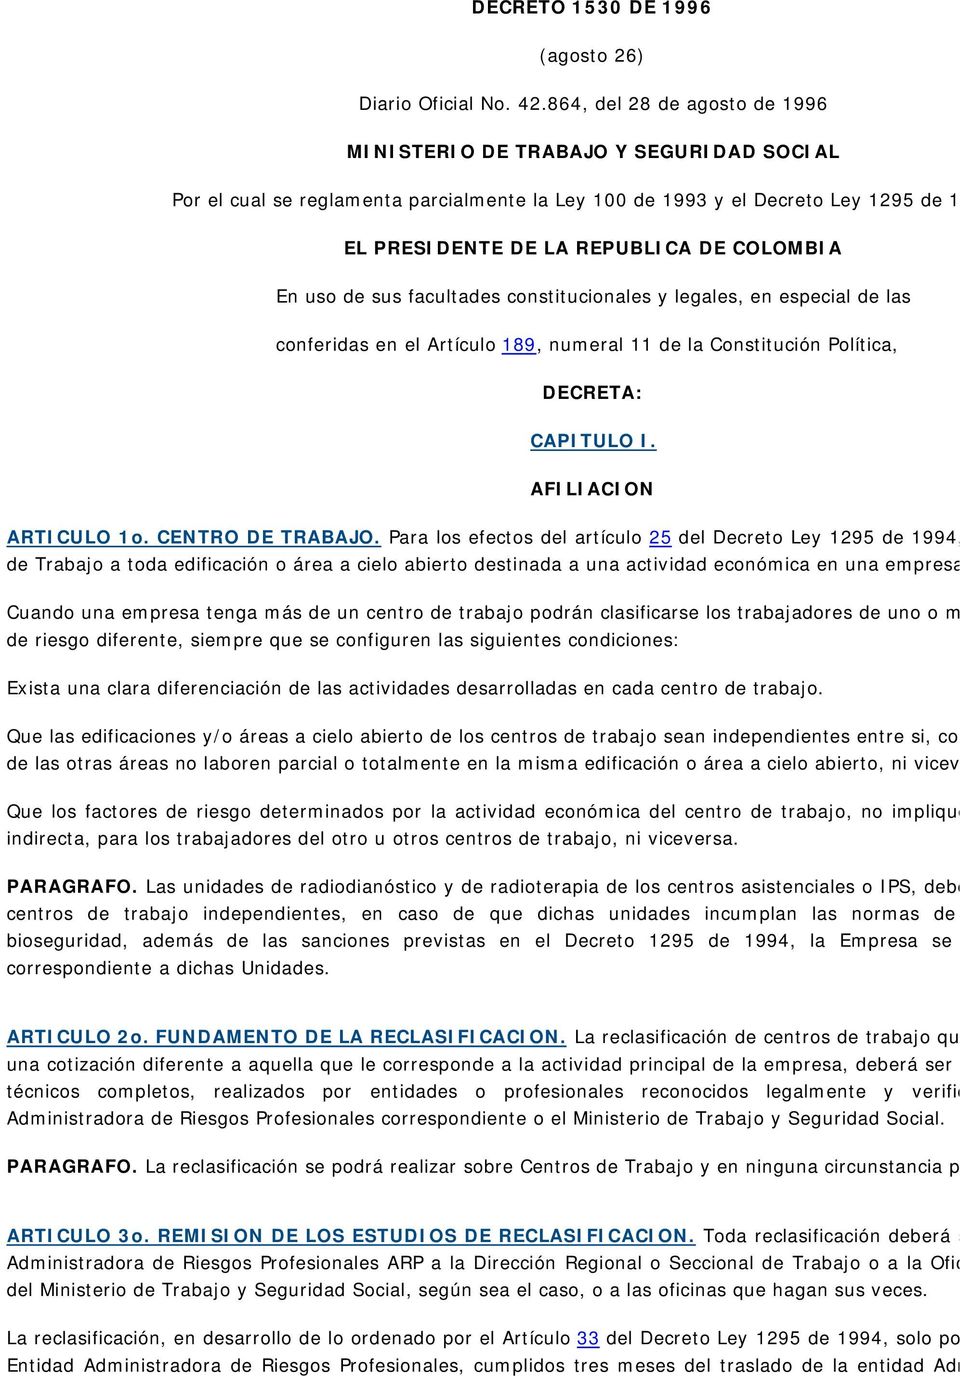 EL PRESIDENTE DE LA REPUBLICA DE COLOMBIA En uso de sus facultades constitucionales y legales, en especial de las conferidas en el Artículo 189, numeral 11 de la Constitución Política, DECRETA: